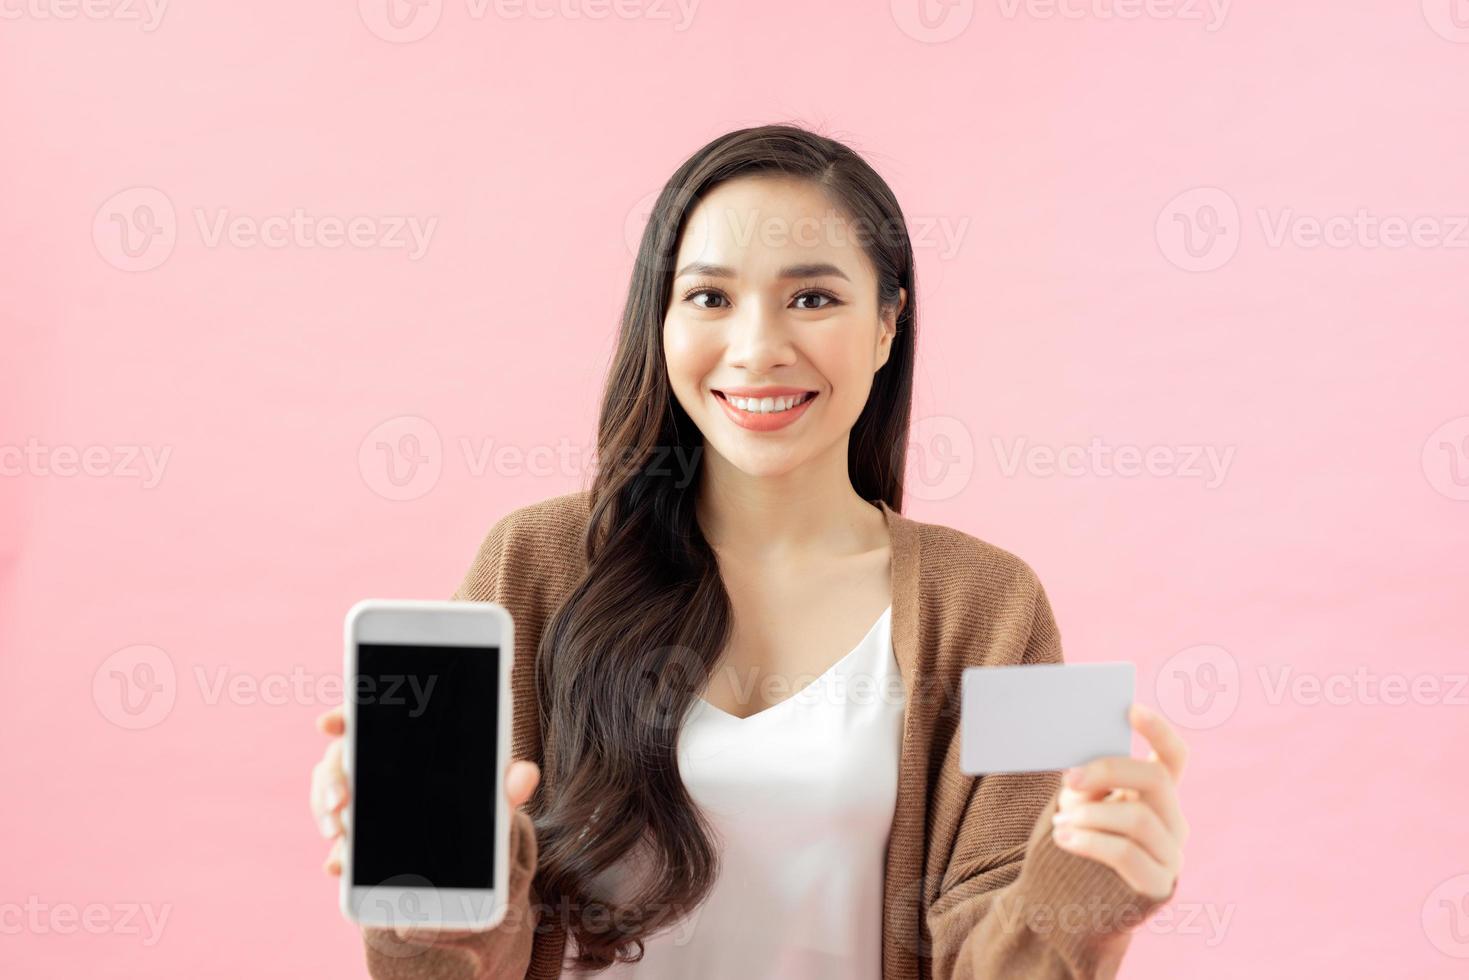 concepto de comercio electrónico, compras y estilo de vida. chica asiática encontró una aplicación increíble para compras en línea, seguimiento de pedidos, teléfono móvil, pantalla de visualización y tarjeta de crédito foto